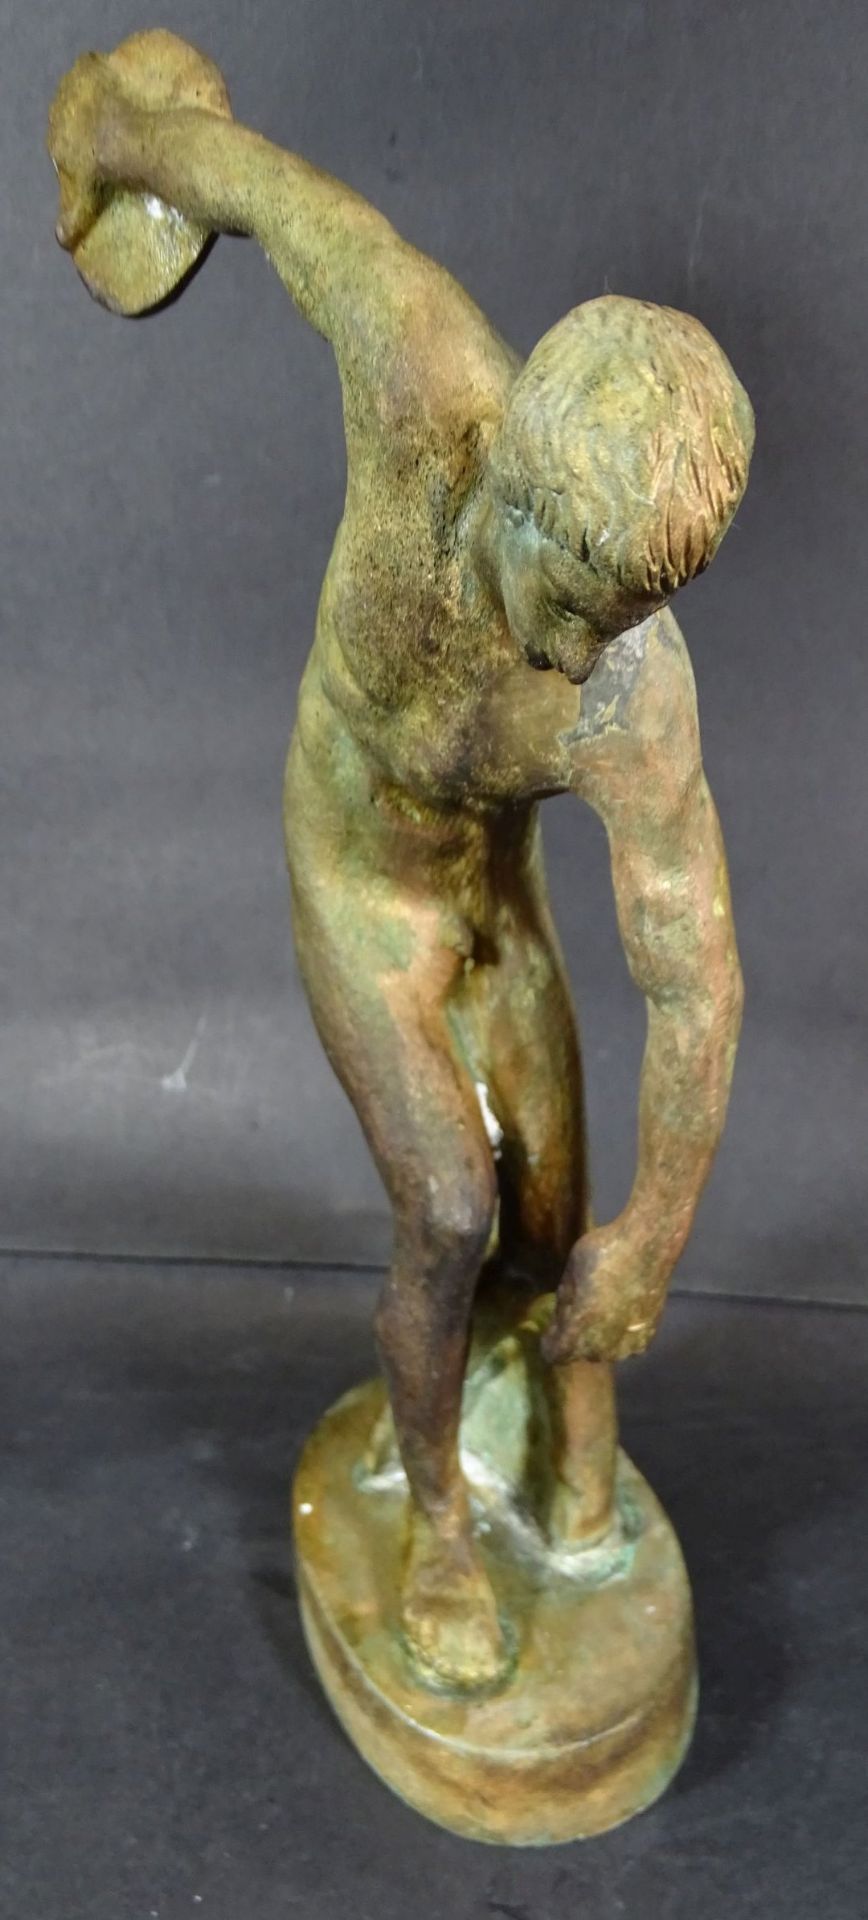 alte Disobulus Figur aus Bronze nach antiken Vorbild, Patina und Altersspuren, H-25 cm,- - -22. - Bild 4 aus 5